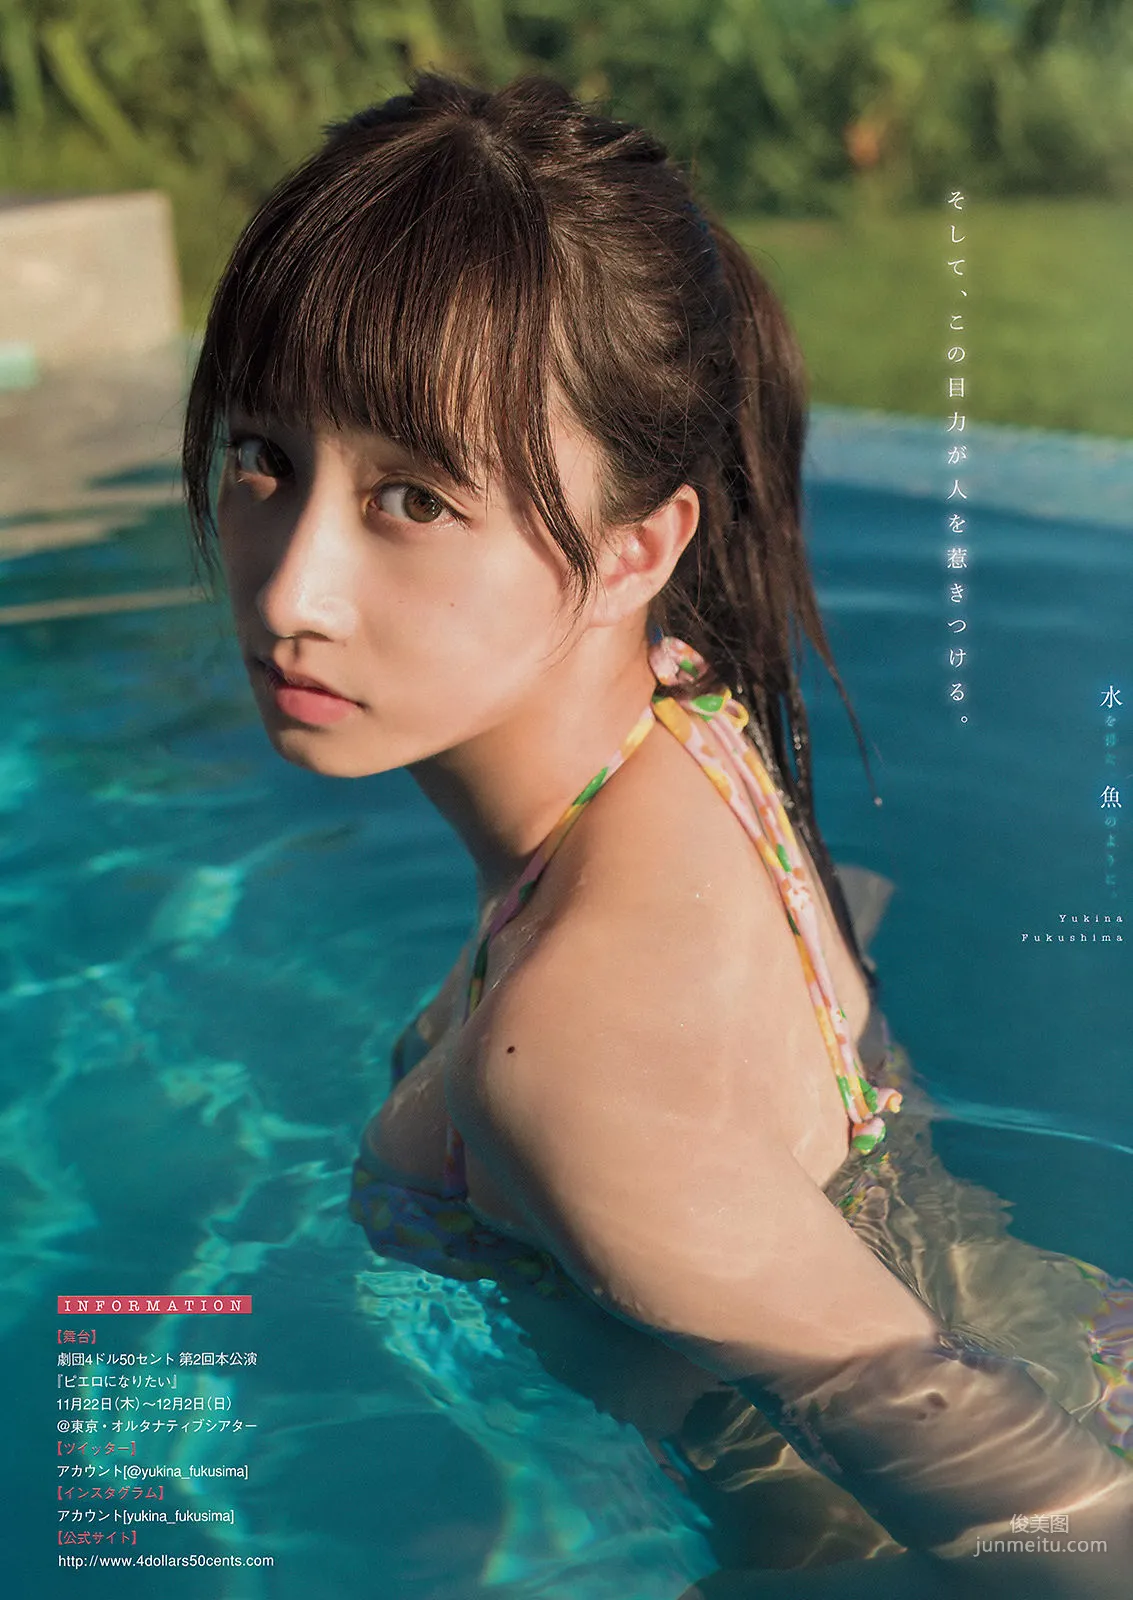 [Young Magazine] 福島雪菜 寺本莉緒 2018年No.50 写真杂志5